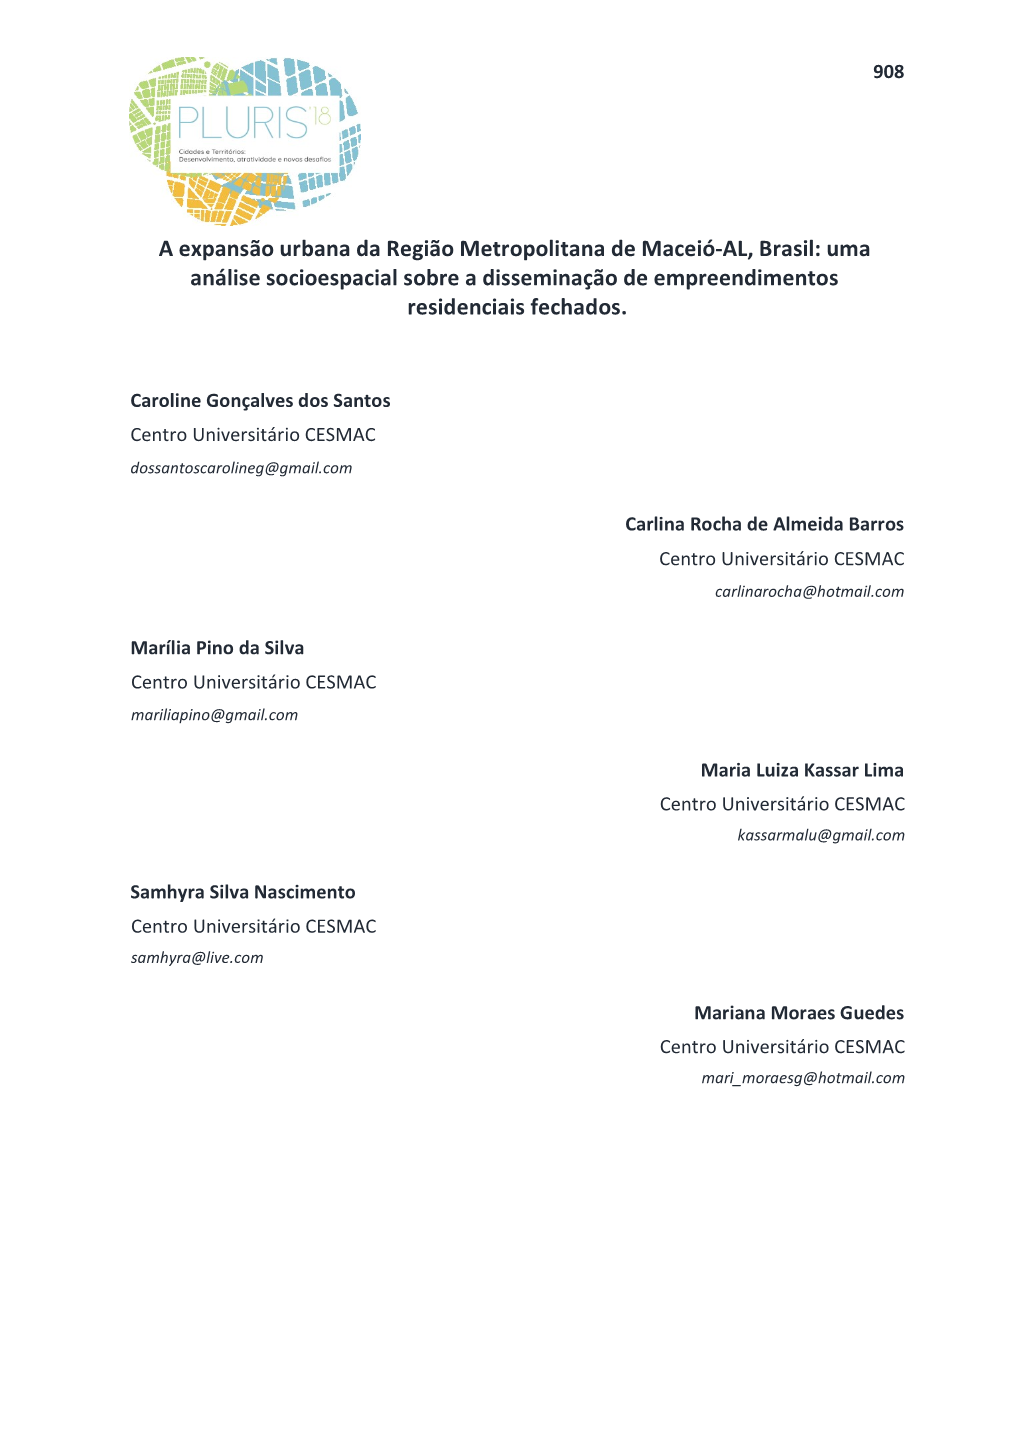 A Expansão Urbana Da Região Metropolitana De Maceió-AL, Brasil: Uma Análise Socioespacial Sobre a Disseminação De Empreendimentos Residenciais Fechados